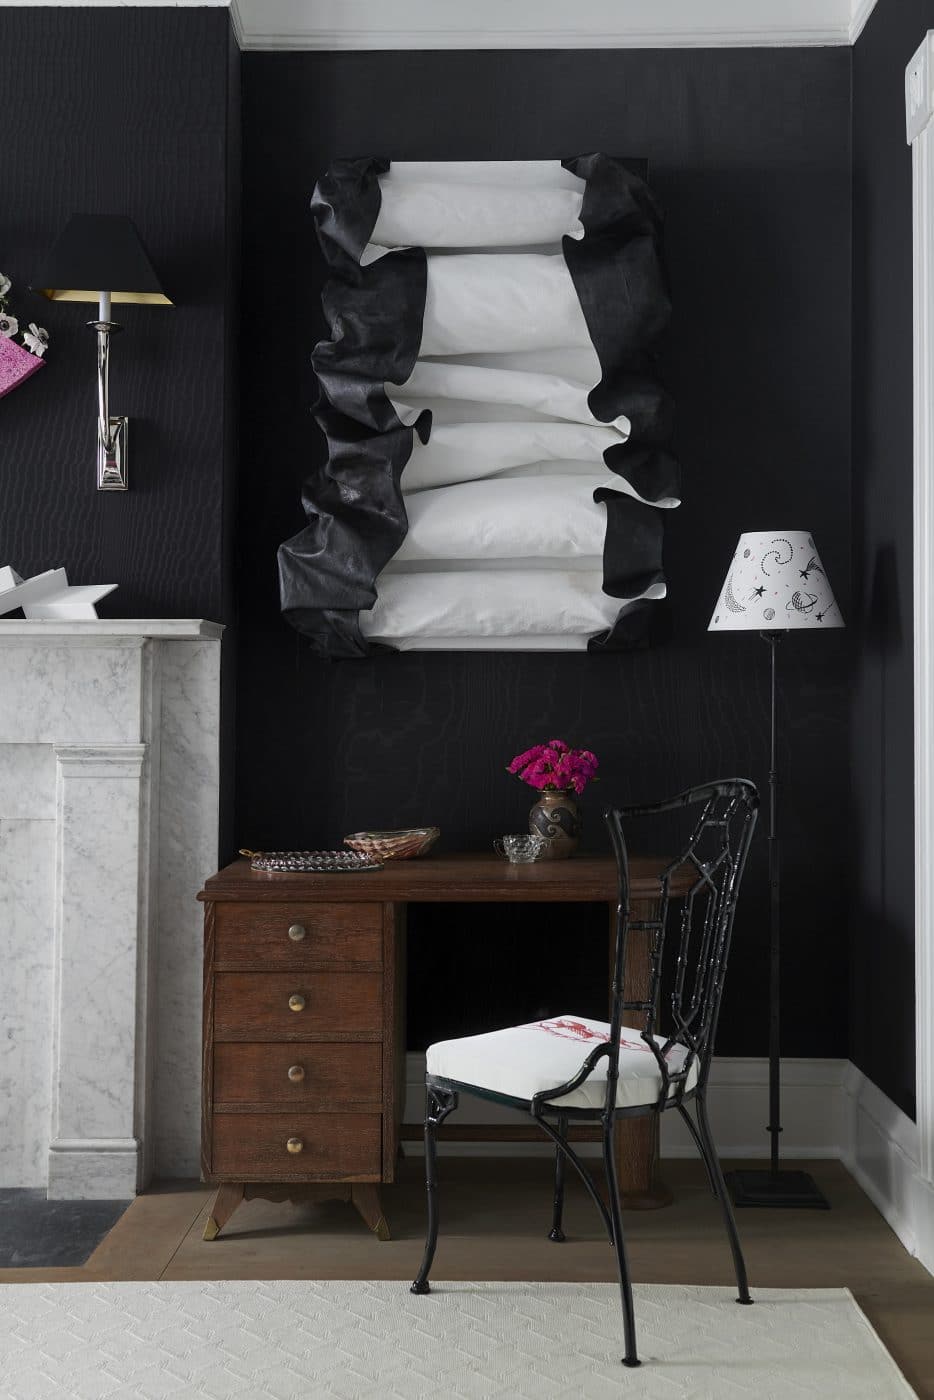 Black-and-white Brooklyn bedroom designed by Tara McCauley